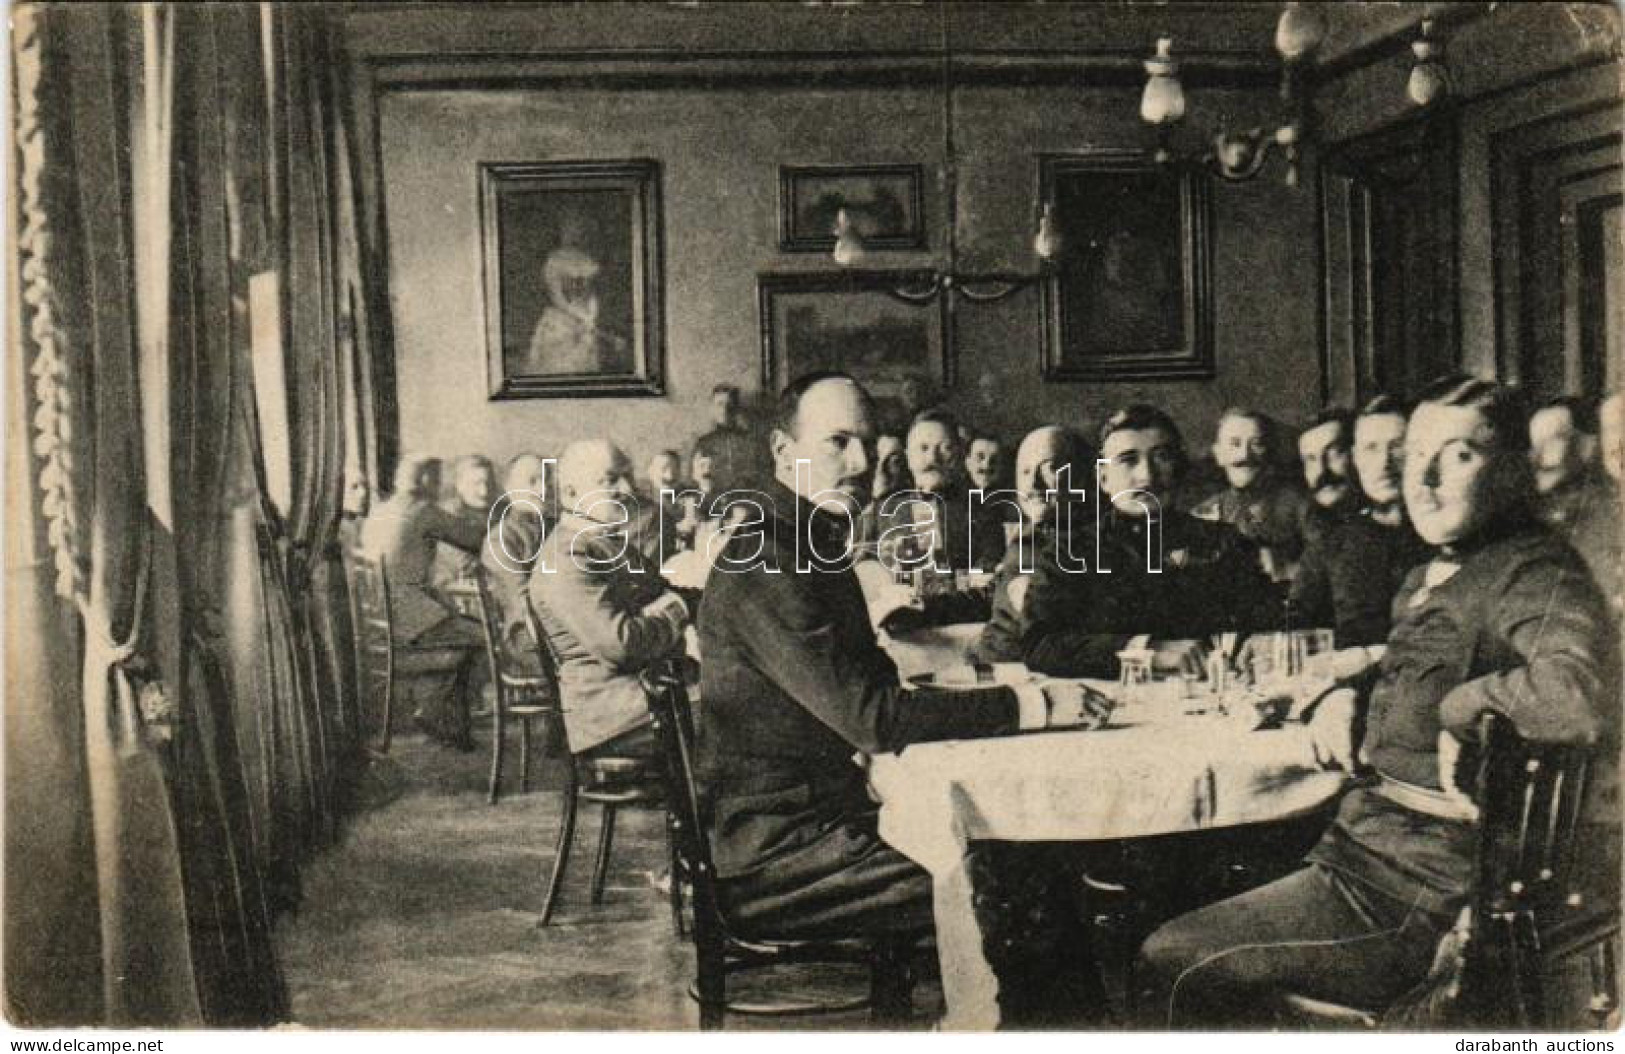 * T3 1917 Magyar Katonai Tiszti étterem Belseje Ebéd Közben. Löbl Dávid és Fia Kiadása (Rb) - Sin Clasificación